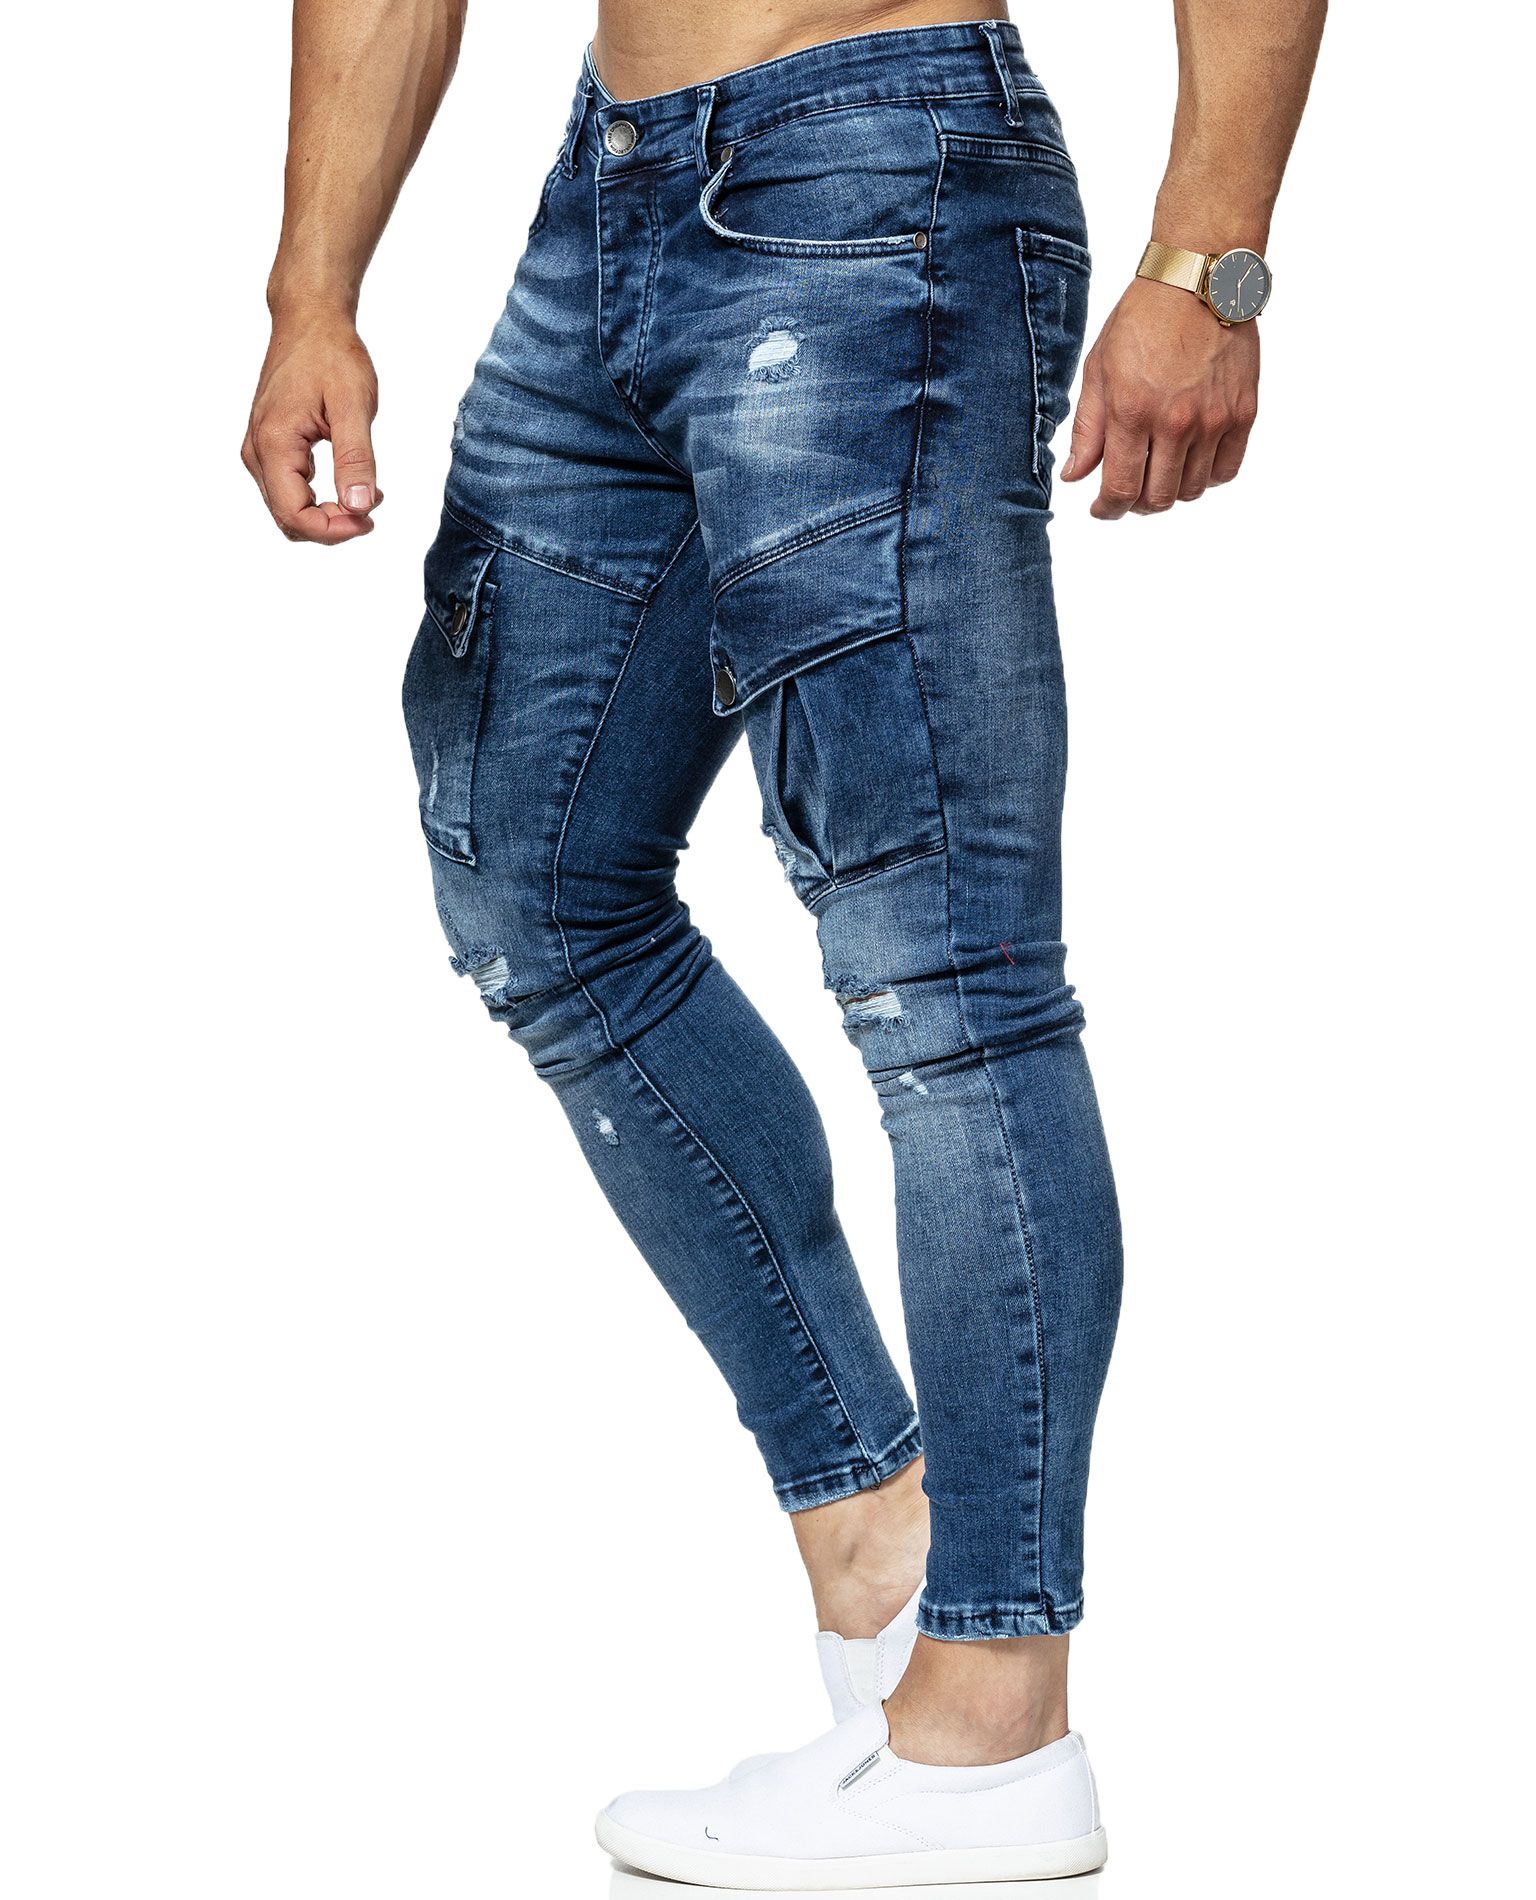 Radical Striker Jeans Blue L32 Jerone - 8029 - Jeans - Jerone